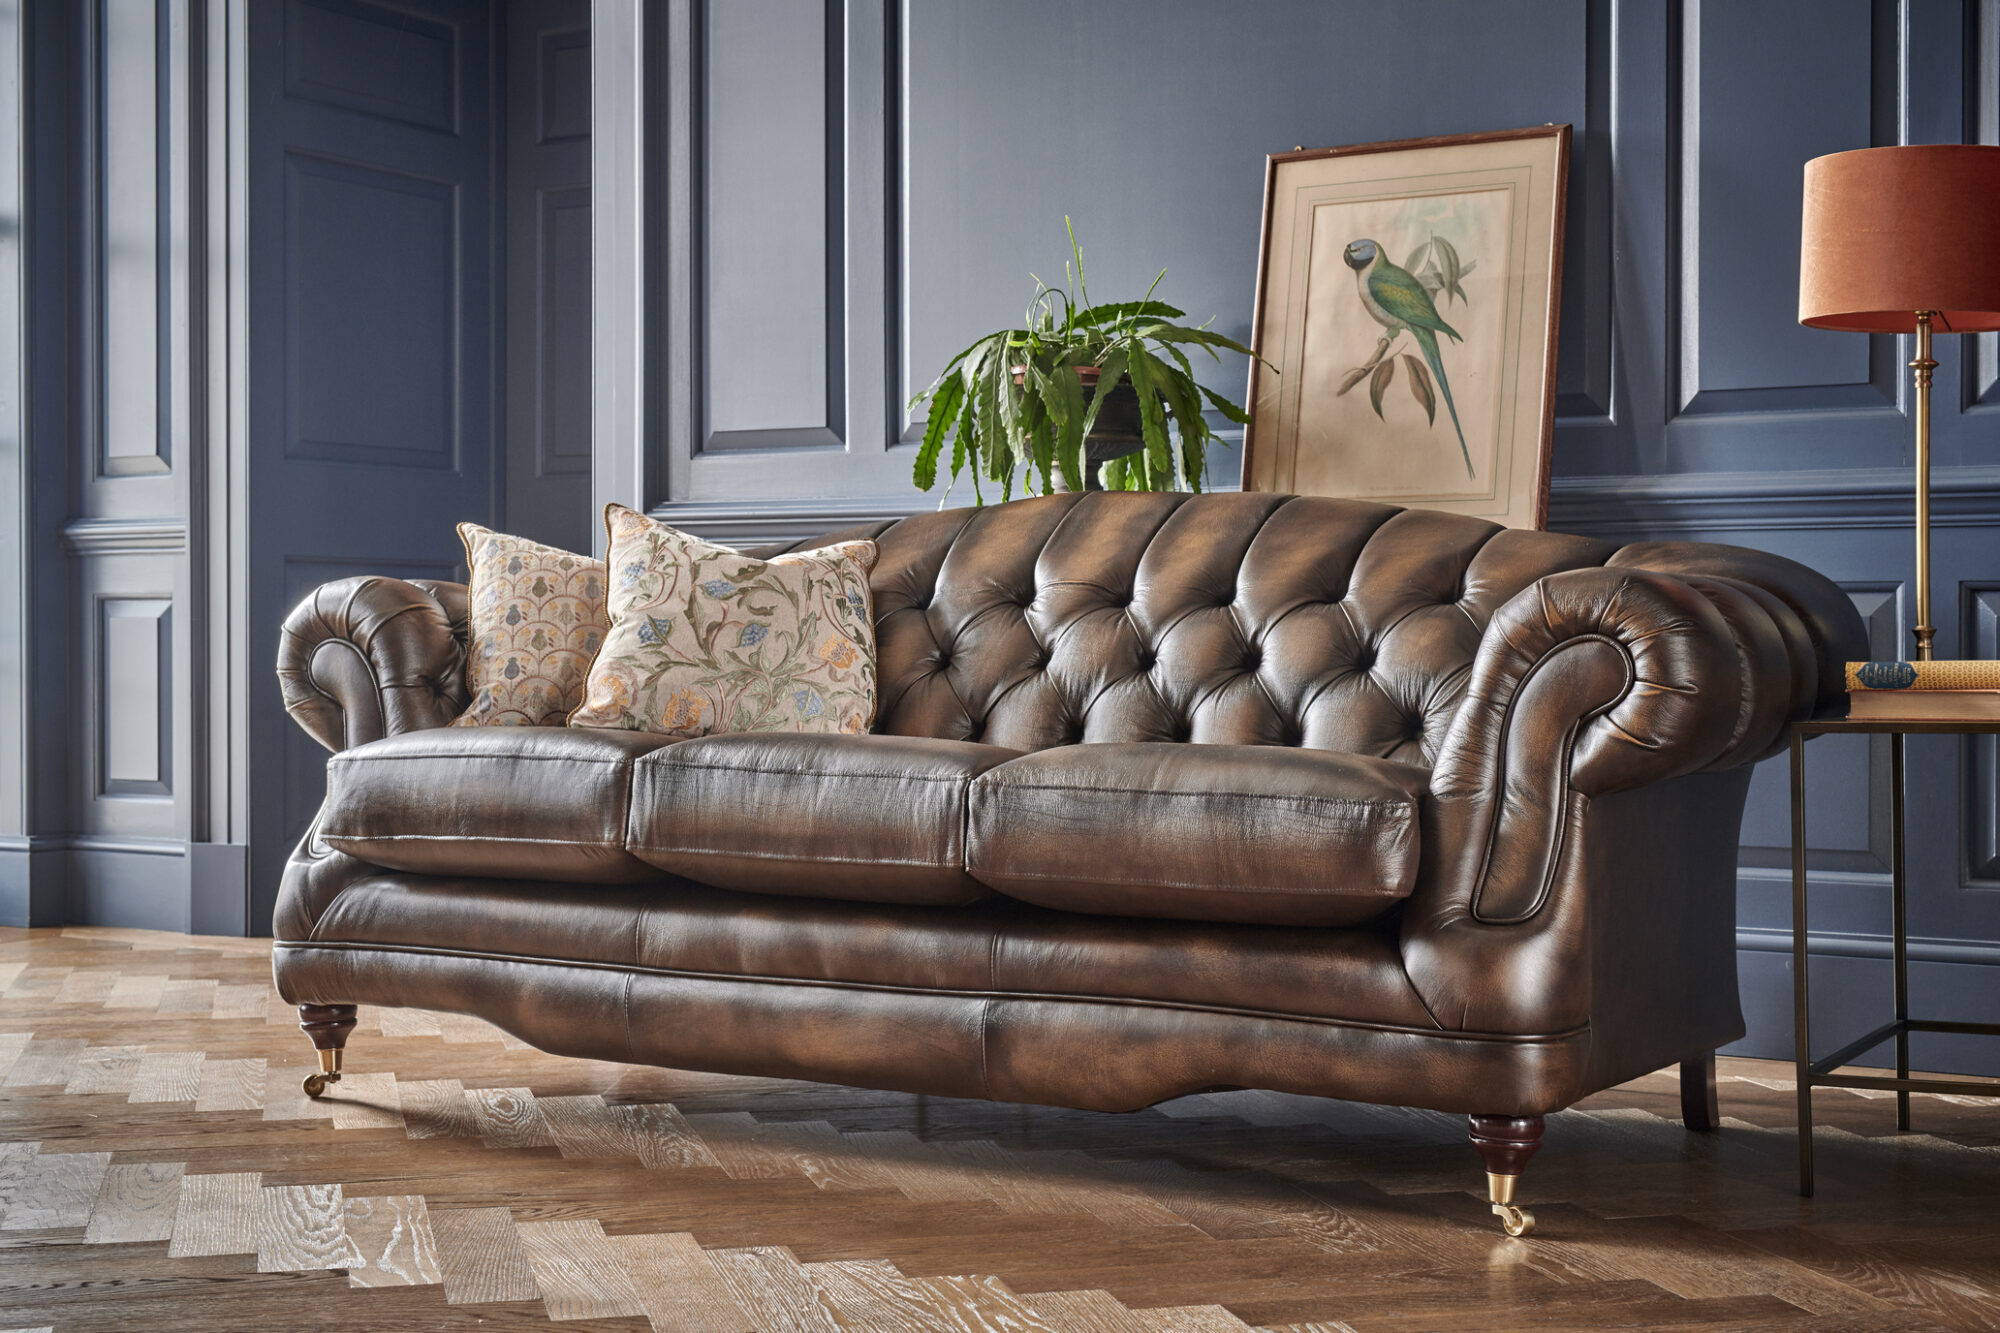 afw durahide leather sofa